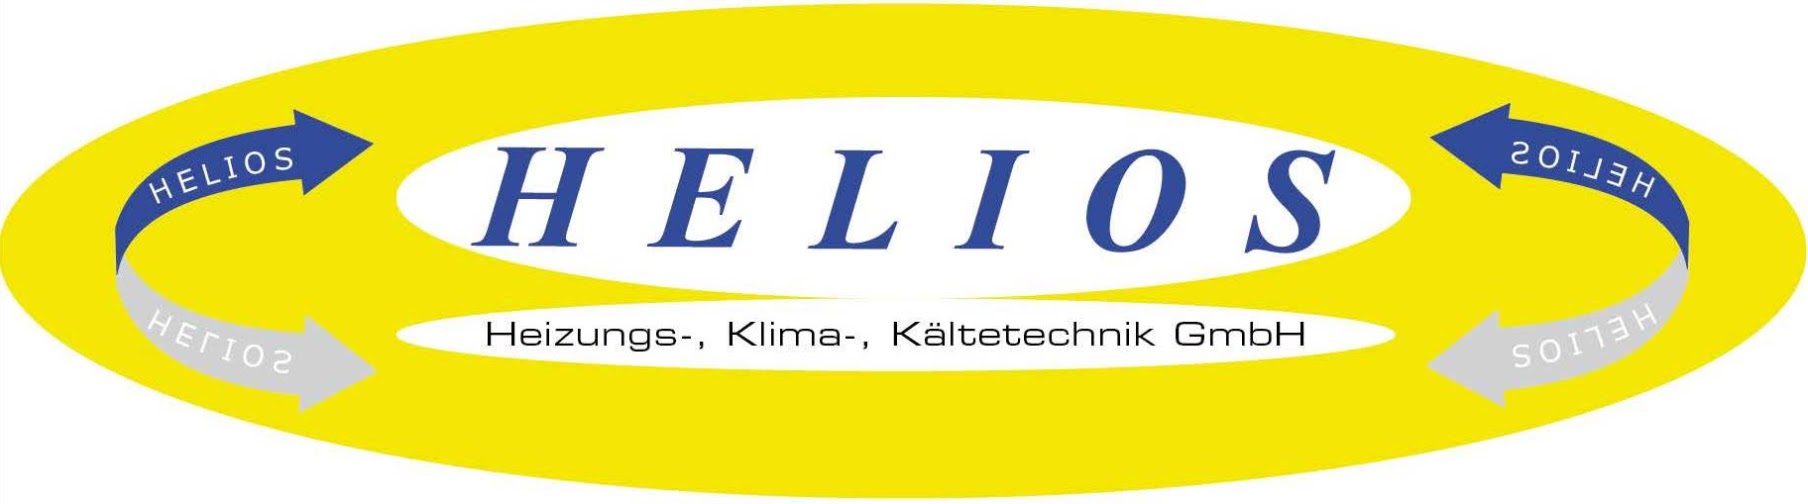 Helios Heizungs-, Klima-, und Kältetechnik GmbH Logo